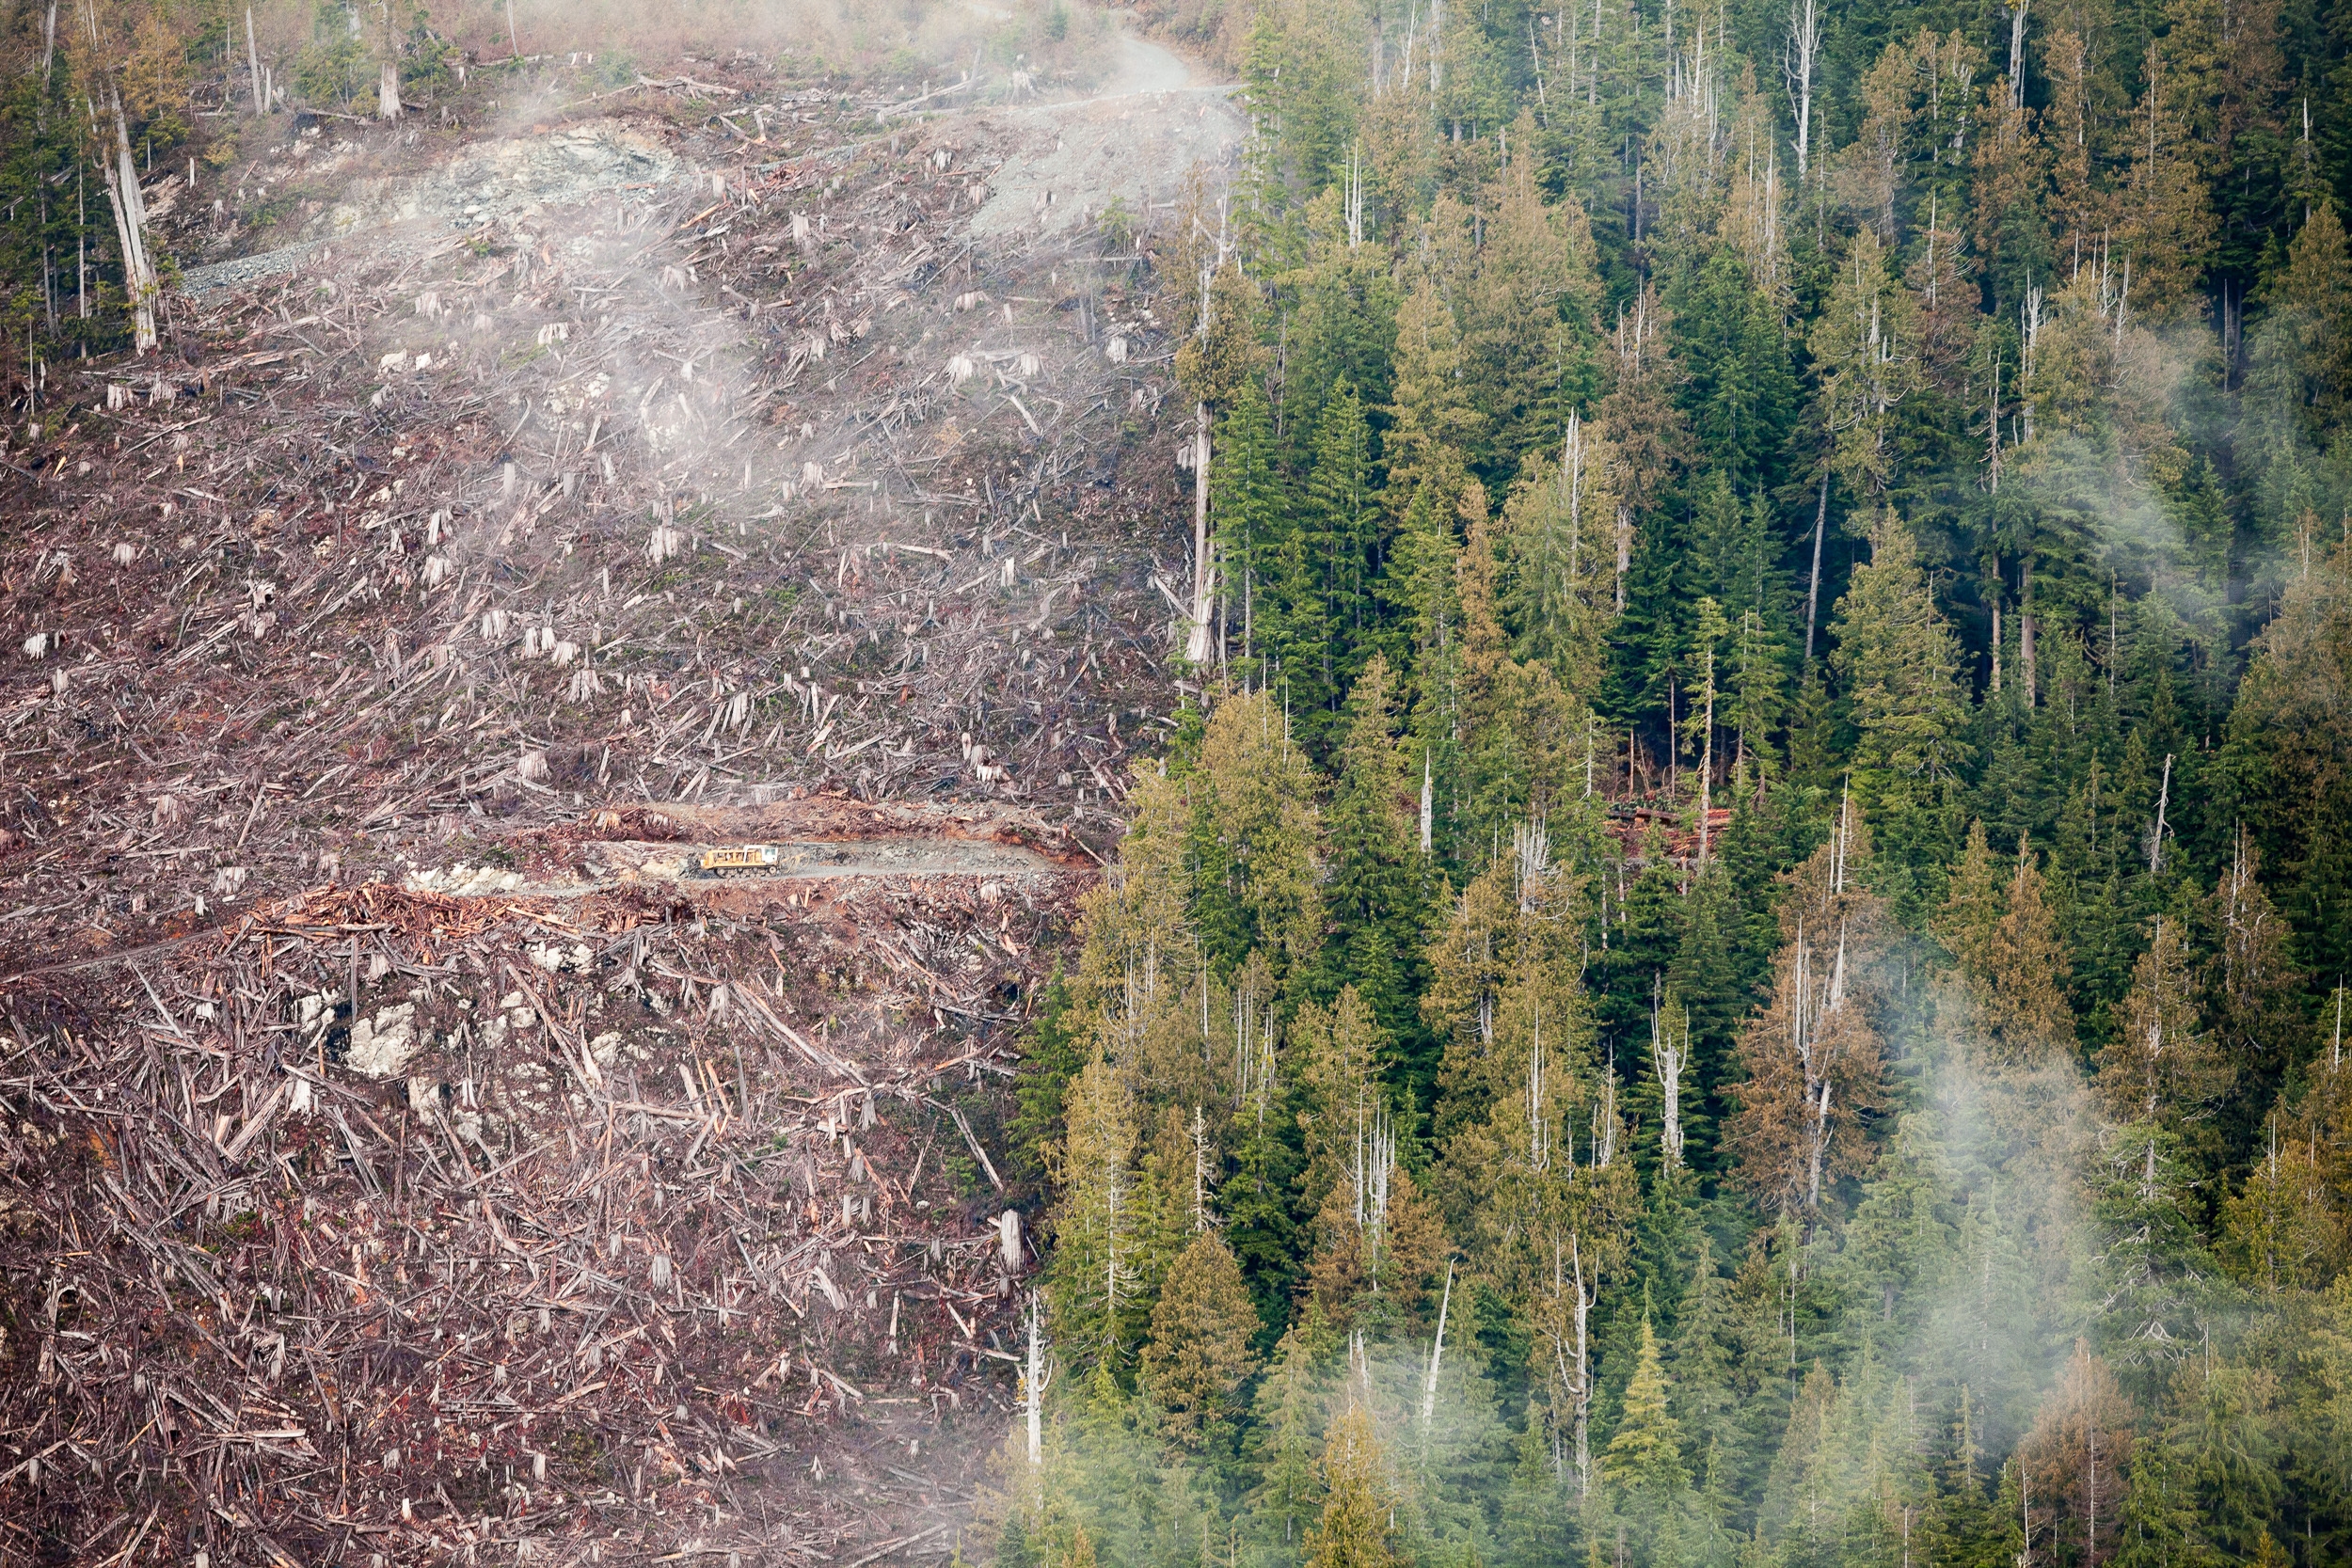 Klanawa-Valley-Old-growth logging-Split-View TJ Watt